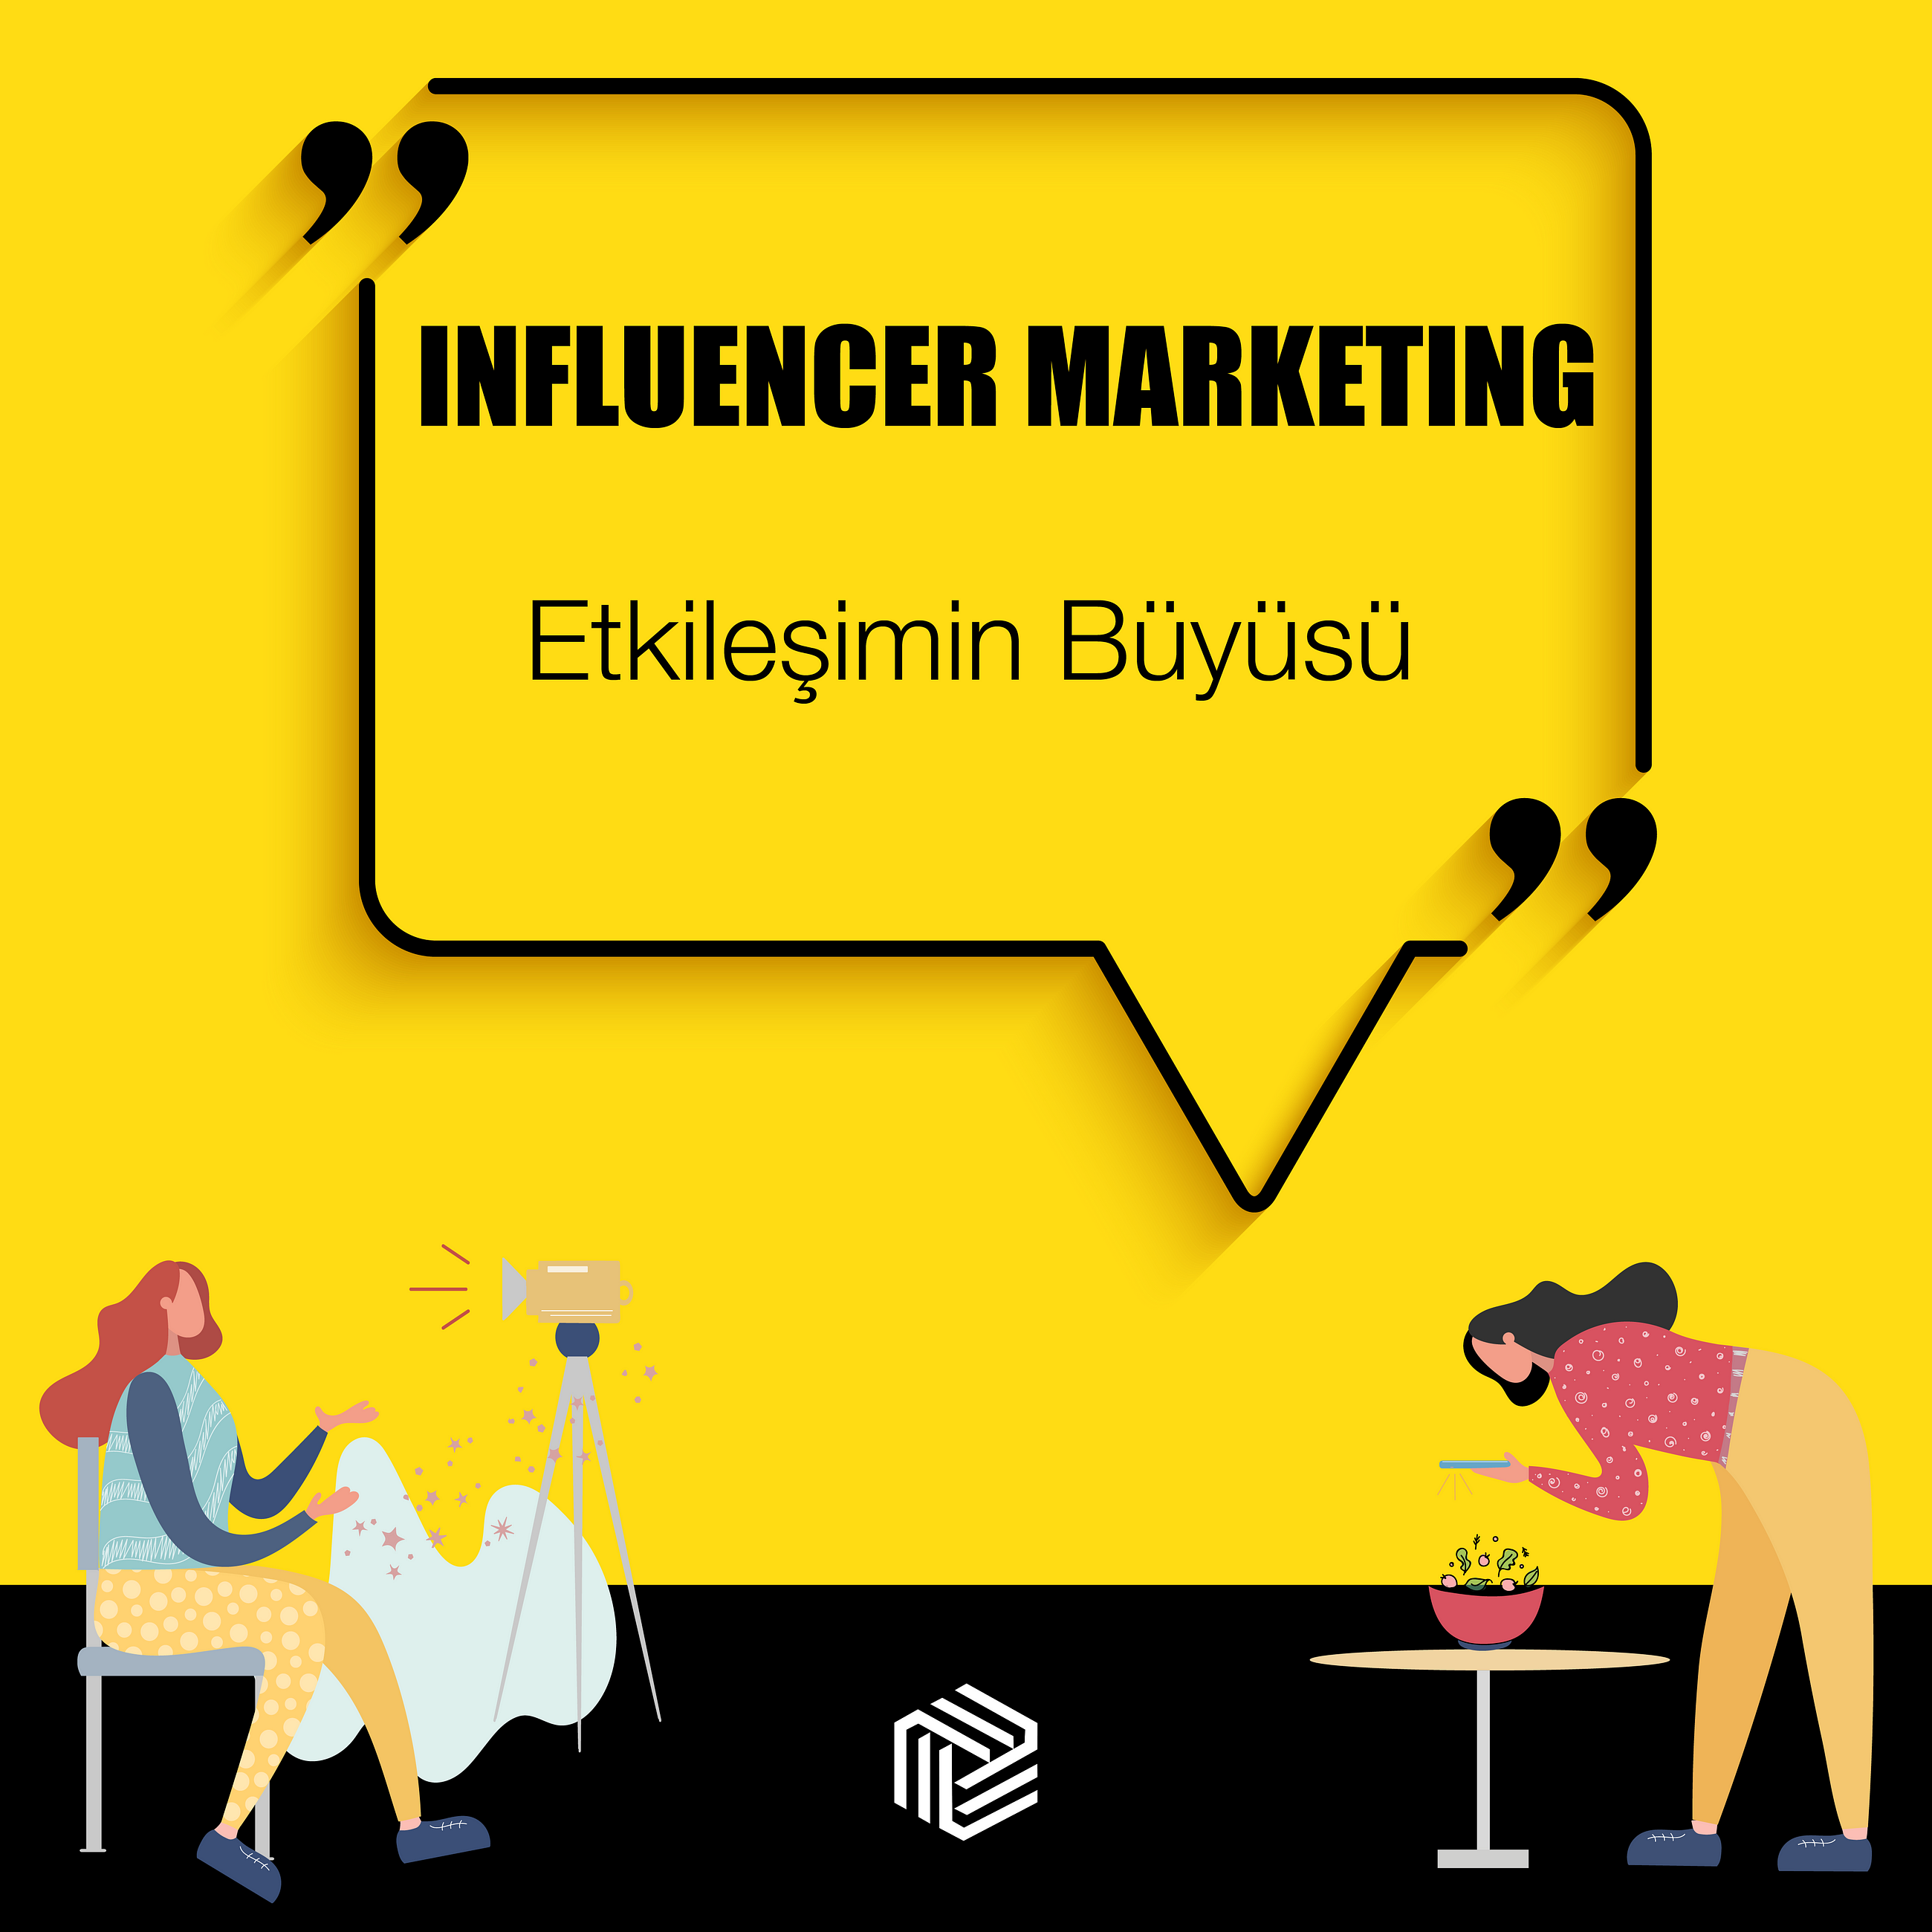 Influencer Marketing: Etkileşimin Büyüsü